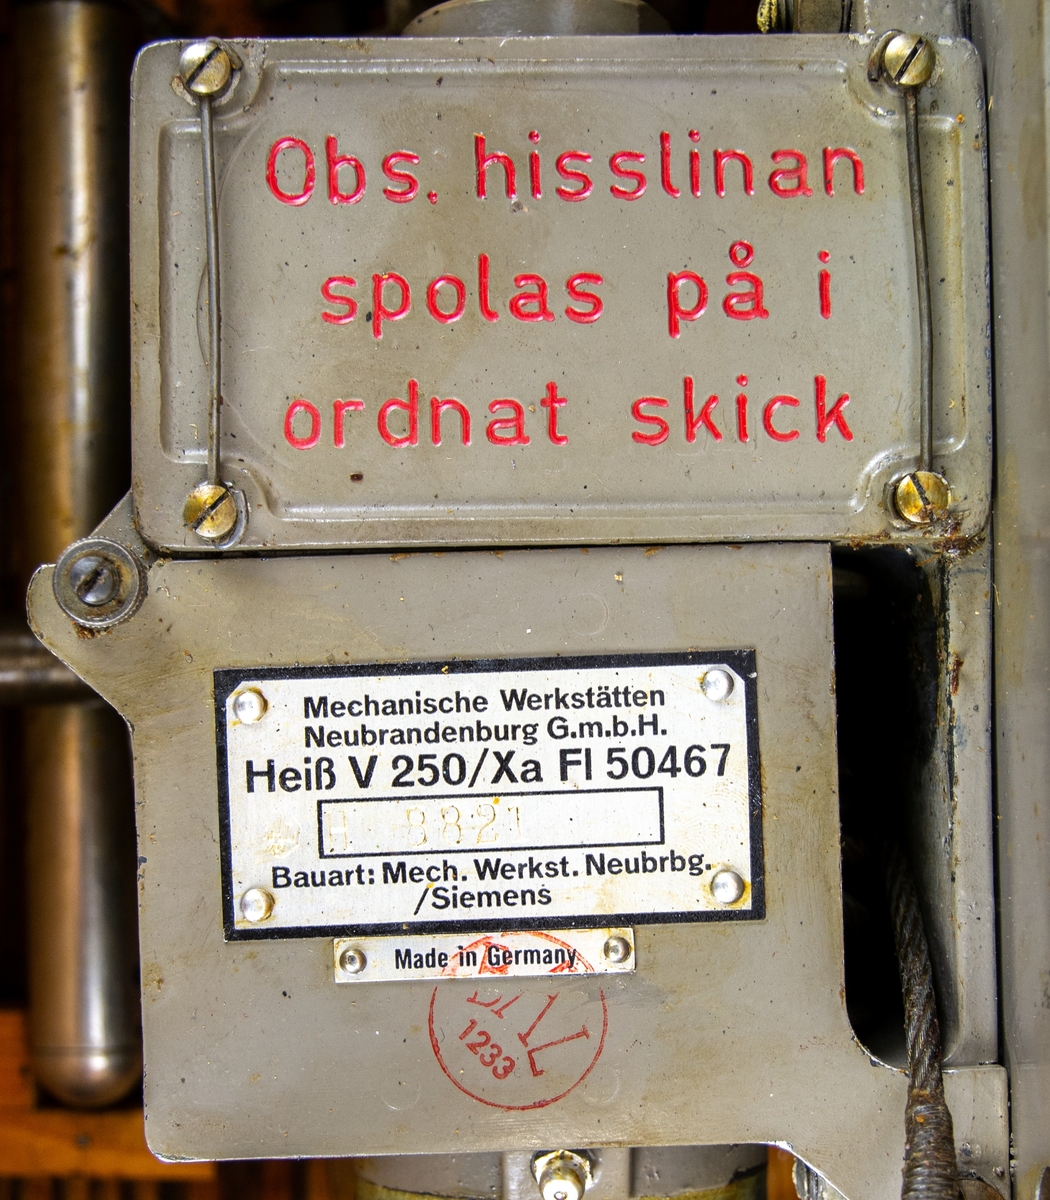 Hissdon B3. förvarad i grönmålad trälåda med tillbehör. Tillverkad av Bauart. Mech. Werkst. Neubrgs. Siemens Tyskland.
Lådan är utanpå märkt II 8821.